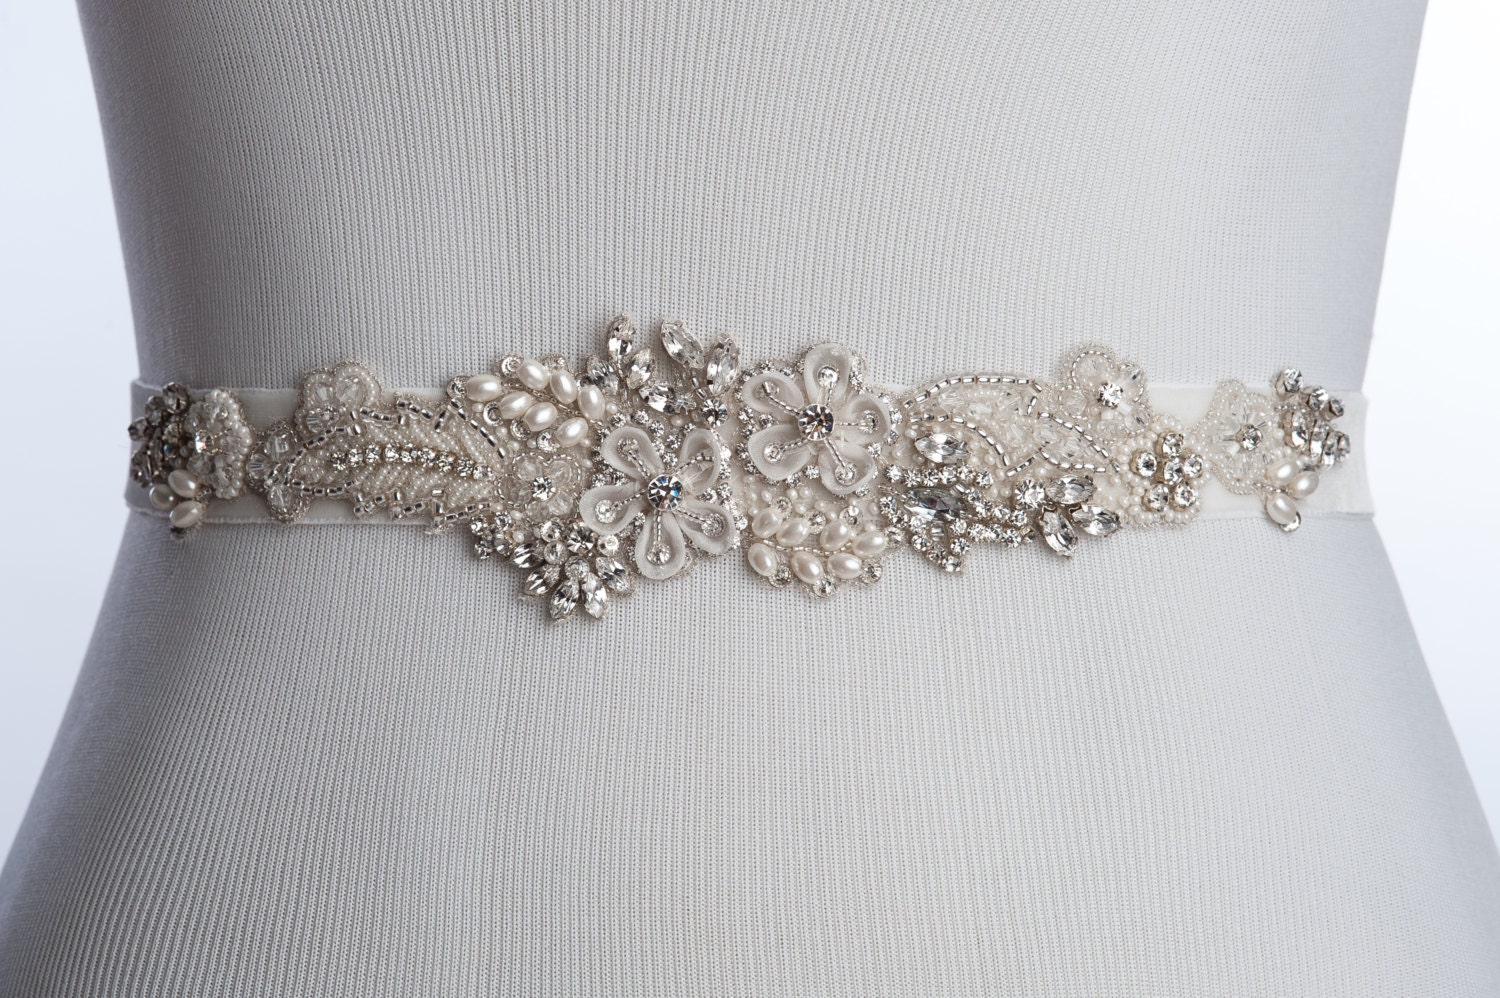 intricate Bridal belt ivory wedding sash wedding dress sash | Etsy